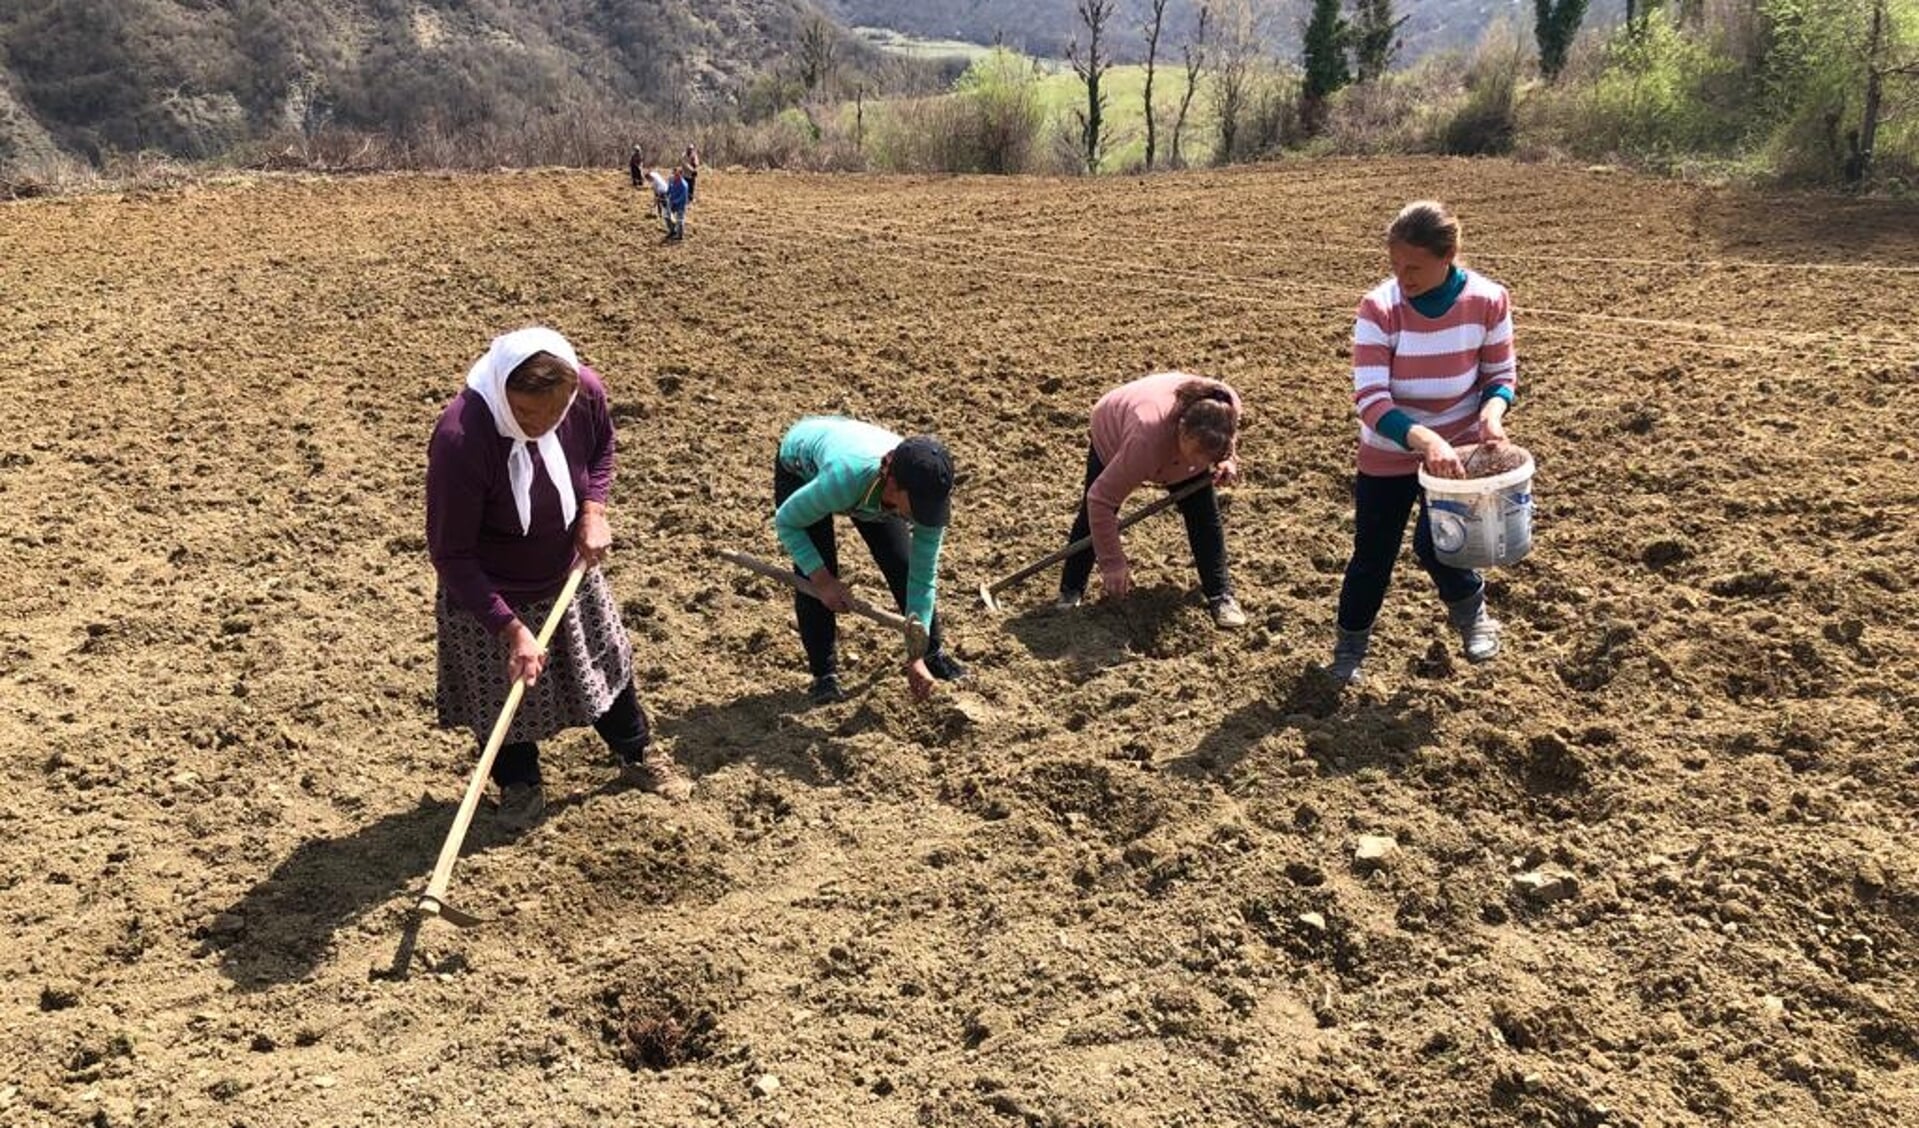 De vrijwilligers uit Garderen gaan onder andere helpen bij het poten van olifantsgras om huizen te verwarmen in Albanië.